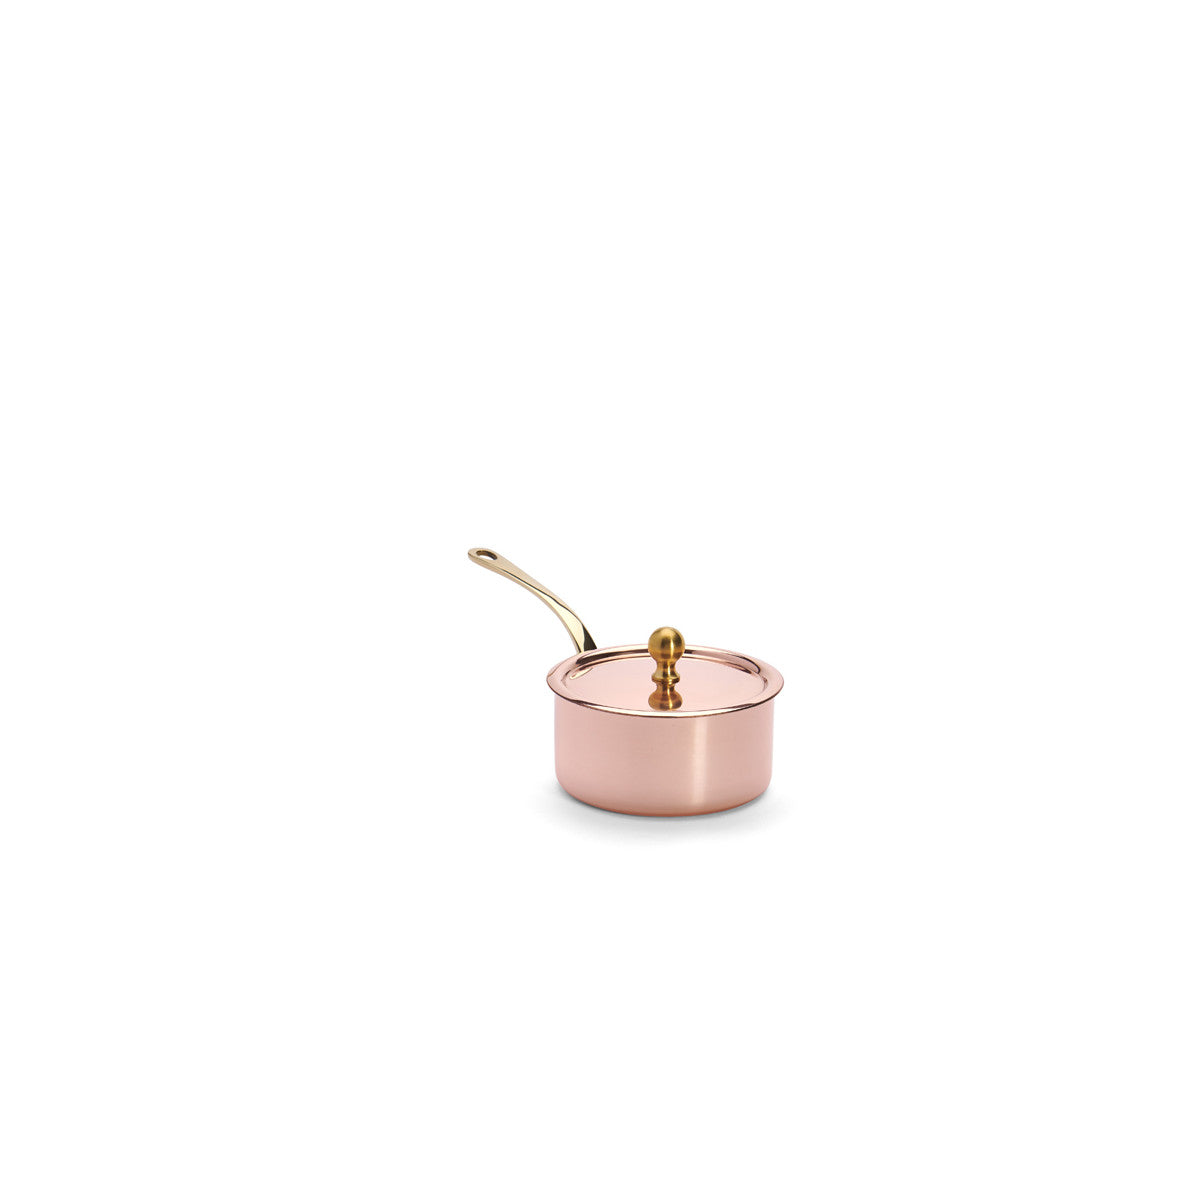 De Buyer copper saucepan with lid, 9 cm